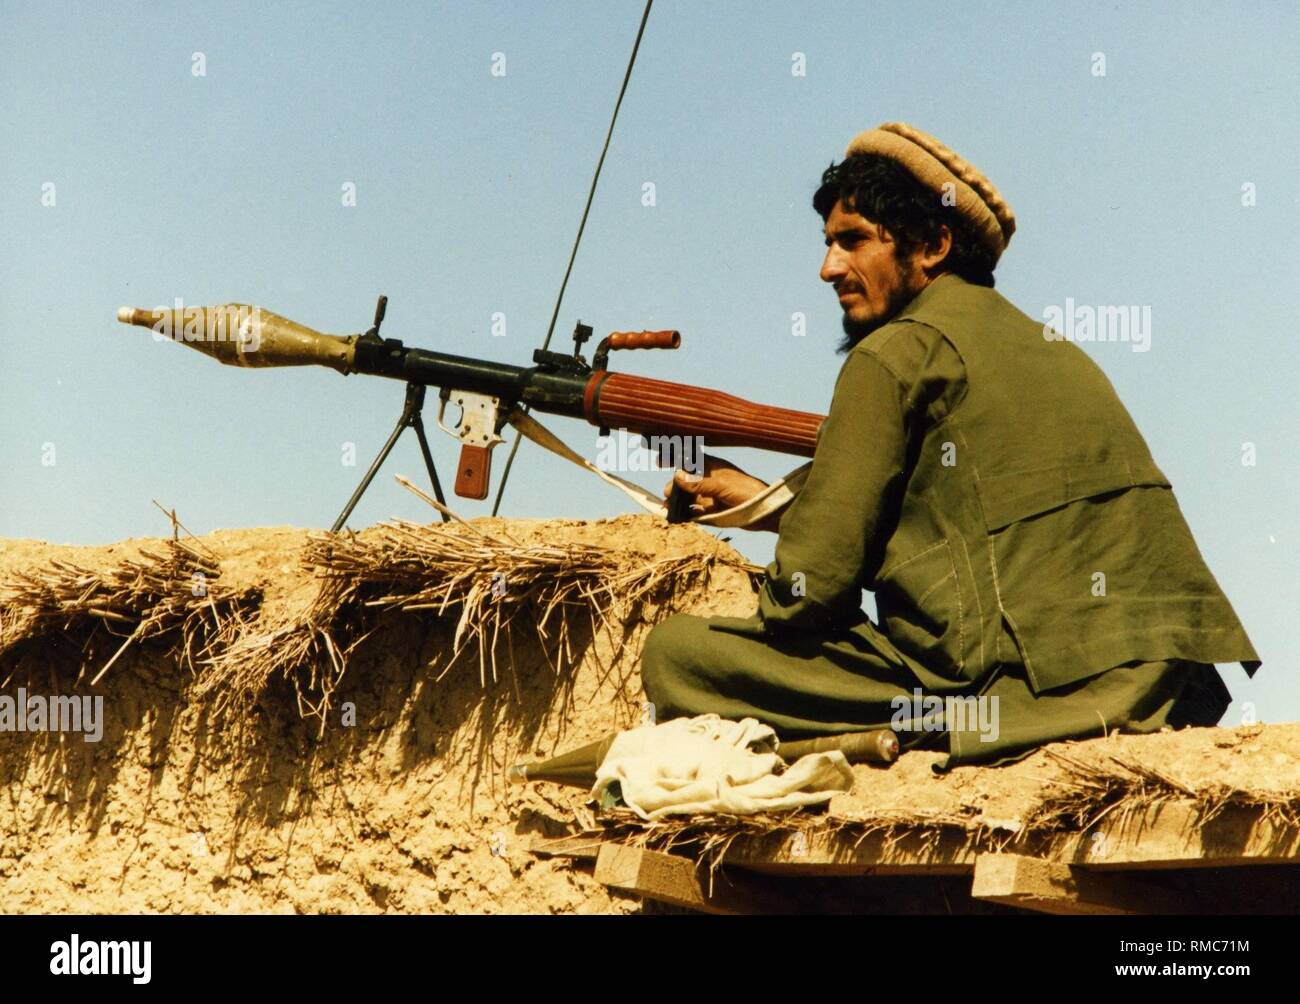 Ein afghanischer Kämpfer bewacht ein Lager auf pakistanischem Territorium mit einem RPG-7 Panzerfaust. Die Mujahedeen überqueren Sie die Grenze in pakistanischen Flüchtlingslagern zu erholen und für den Kampf gegen die sowjetischen Truppen auszustatten. In den Flüchtlingslagern weitere Freiwillige rekrutiert werden. Stockfoto